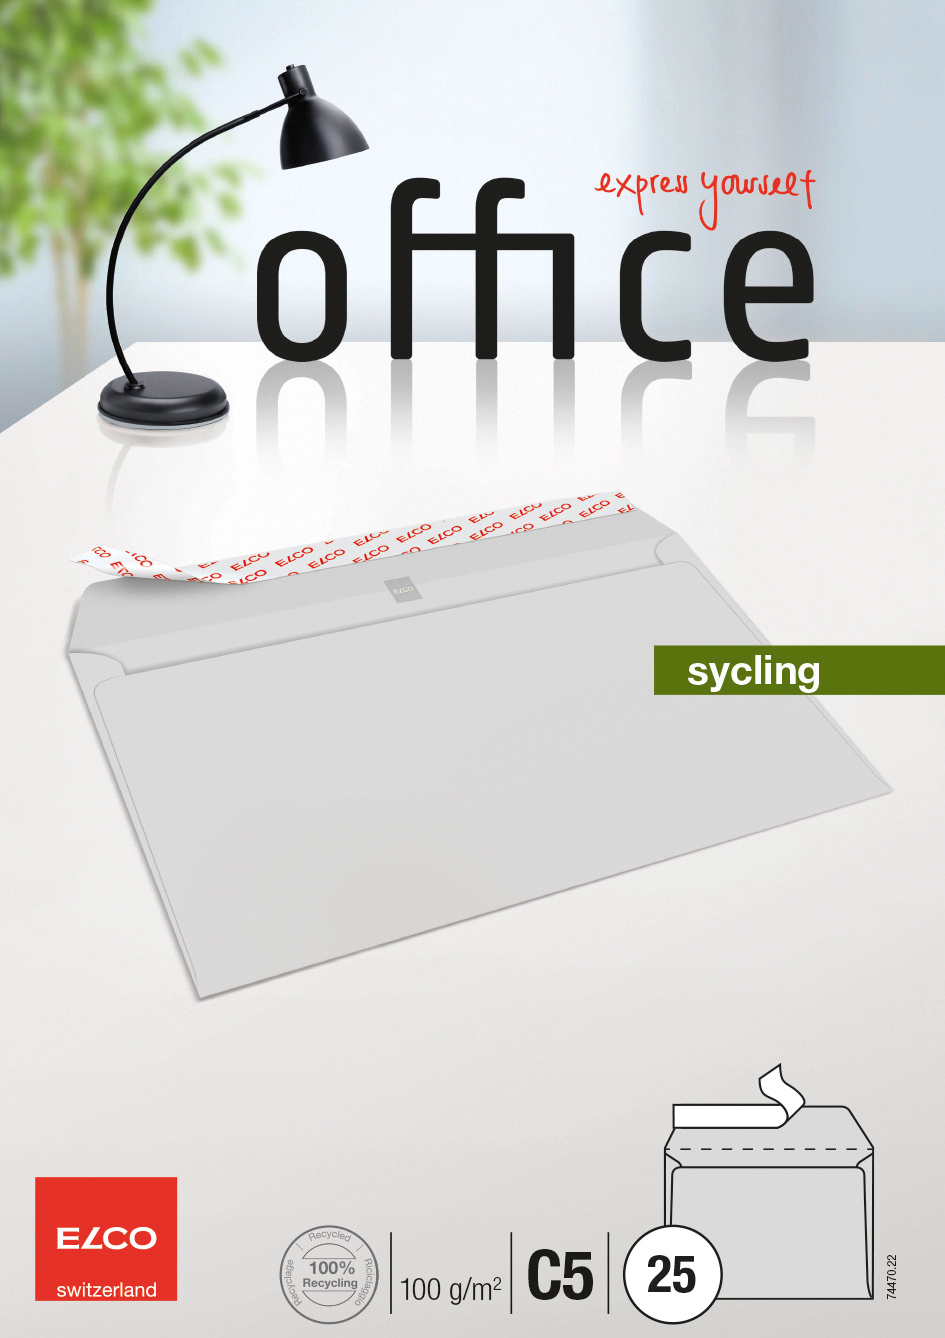 ELCO Enveloppe Office s/fenêtre C5 74470.22 100g, recycling 25 pcs.